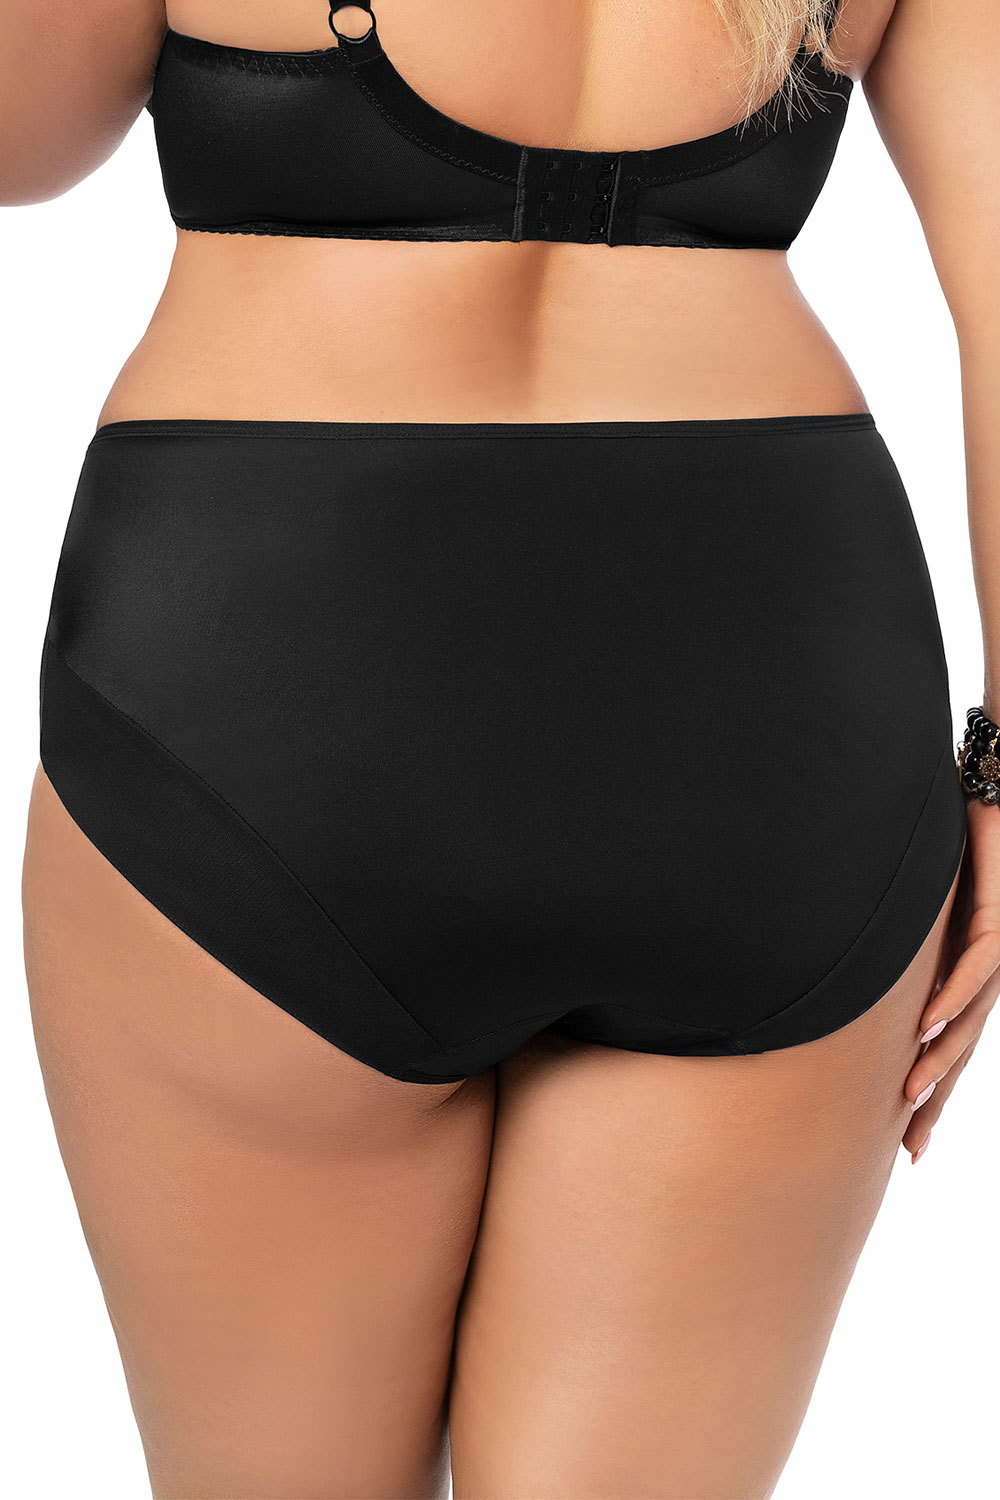 Panties model 128809 Gorsenia Lingerie black Ladies